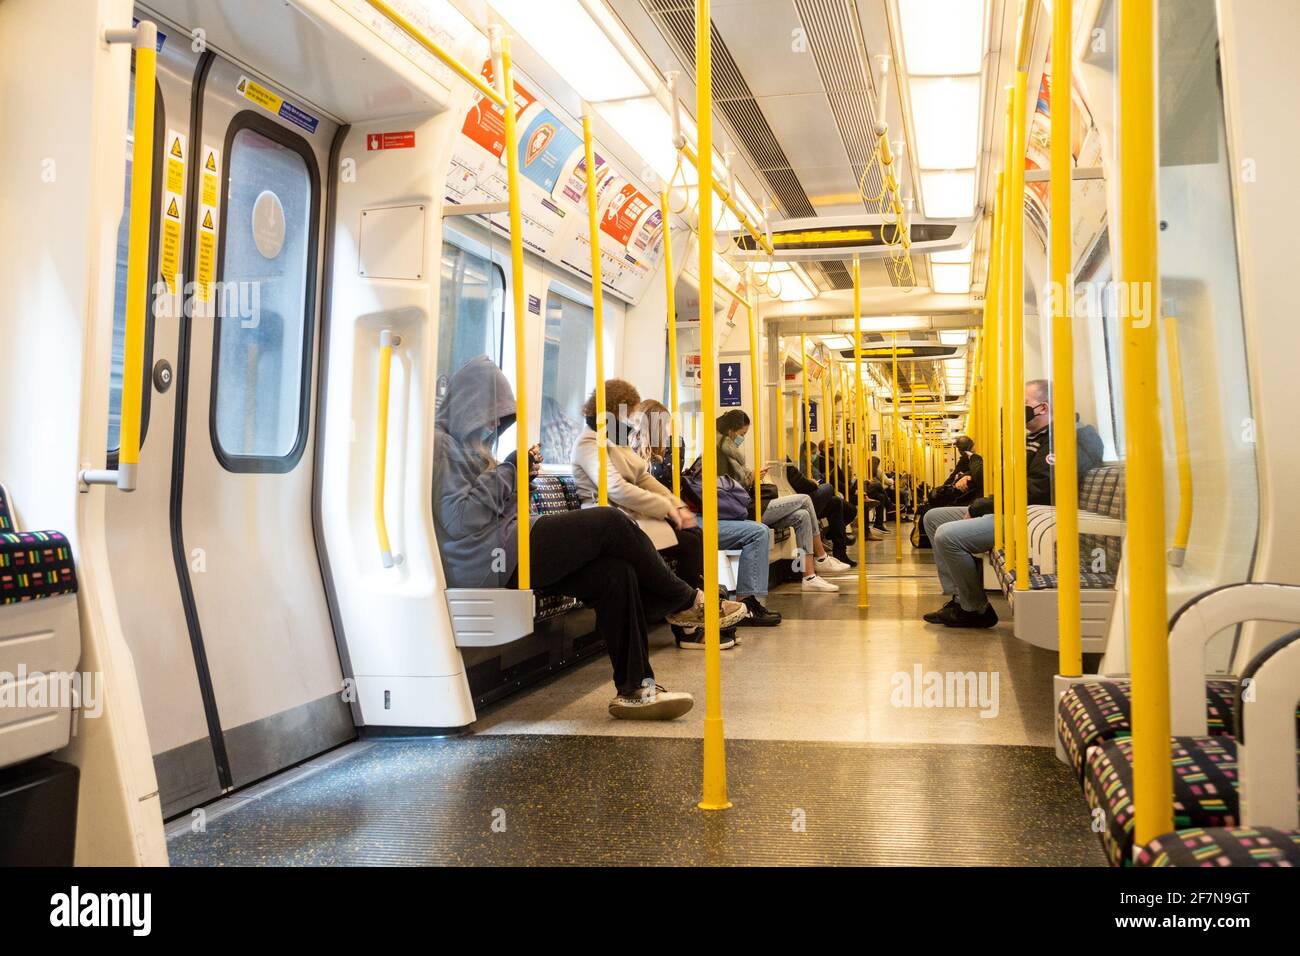 An Bord eines Londoner U-Bahn-Zuges auf der District Line. Der Zug ist aufgrund des Coronavirus relativ leer und alle Passagiere sitzen. Stockfoto